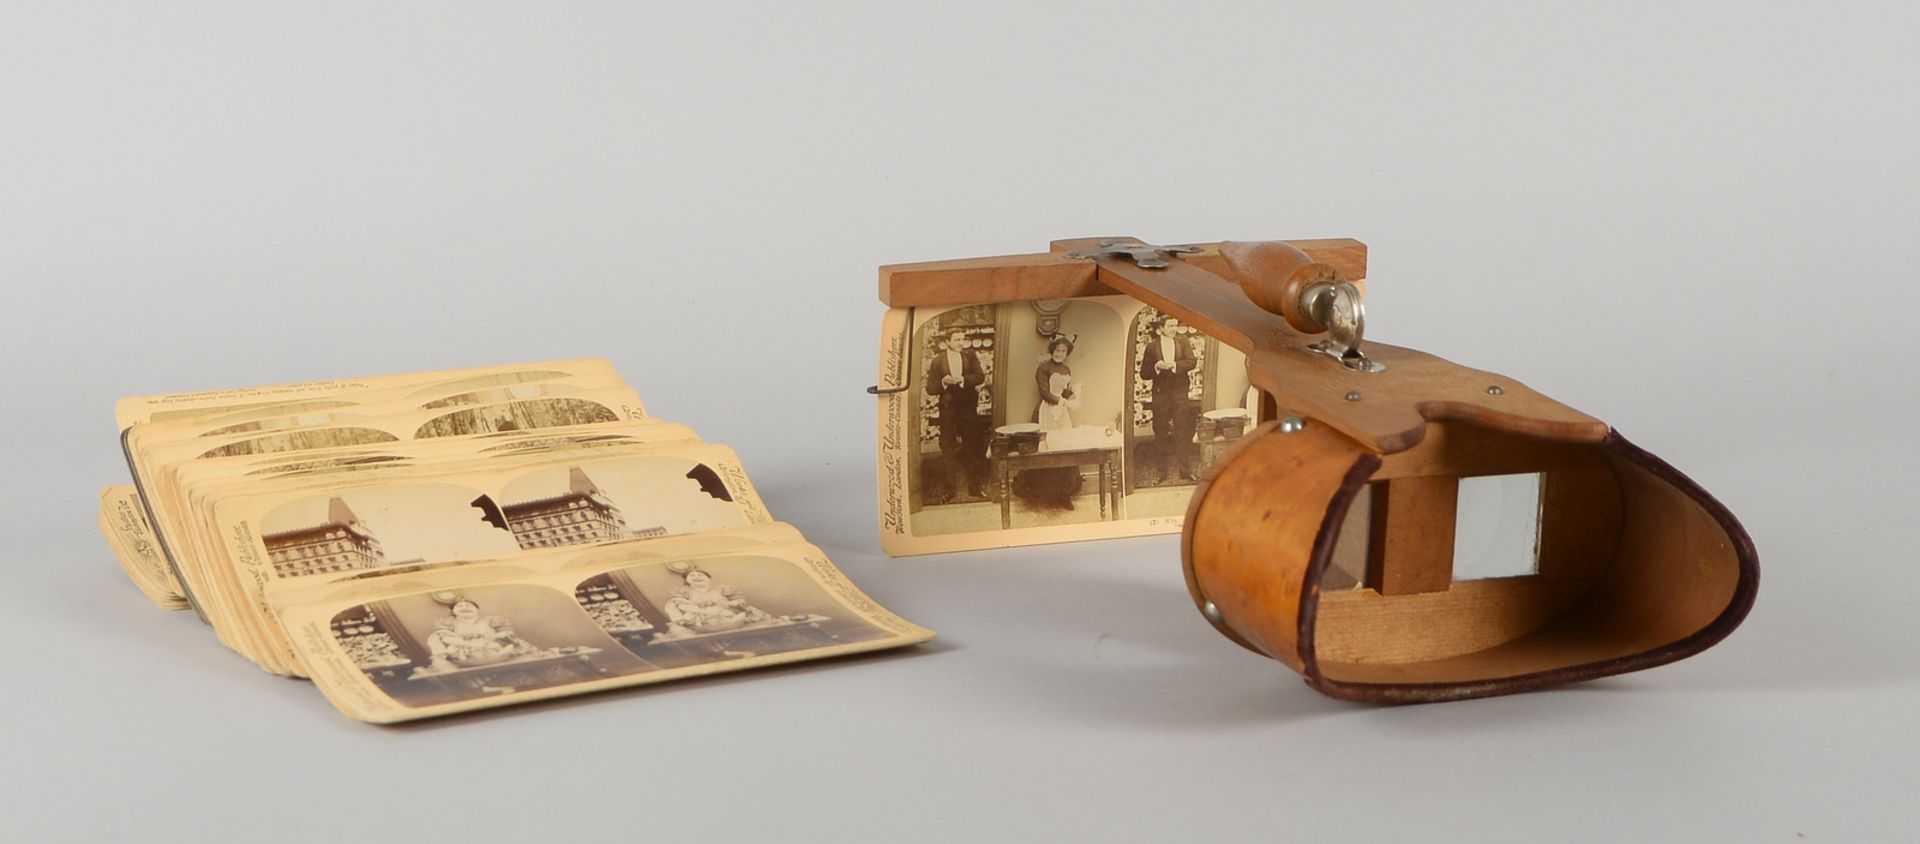 Fotografika-Sammlerst&uuml;ck: Stereoskop-Betrachter, mit 38x Aufnahmen (um 1900) - Bild 2 aus 2